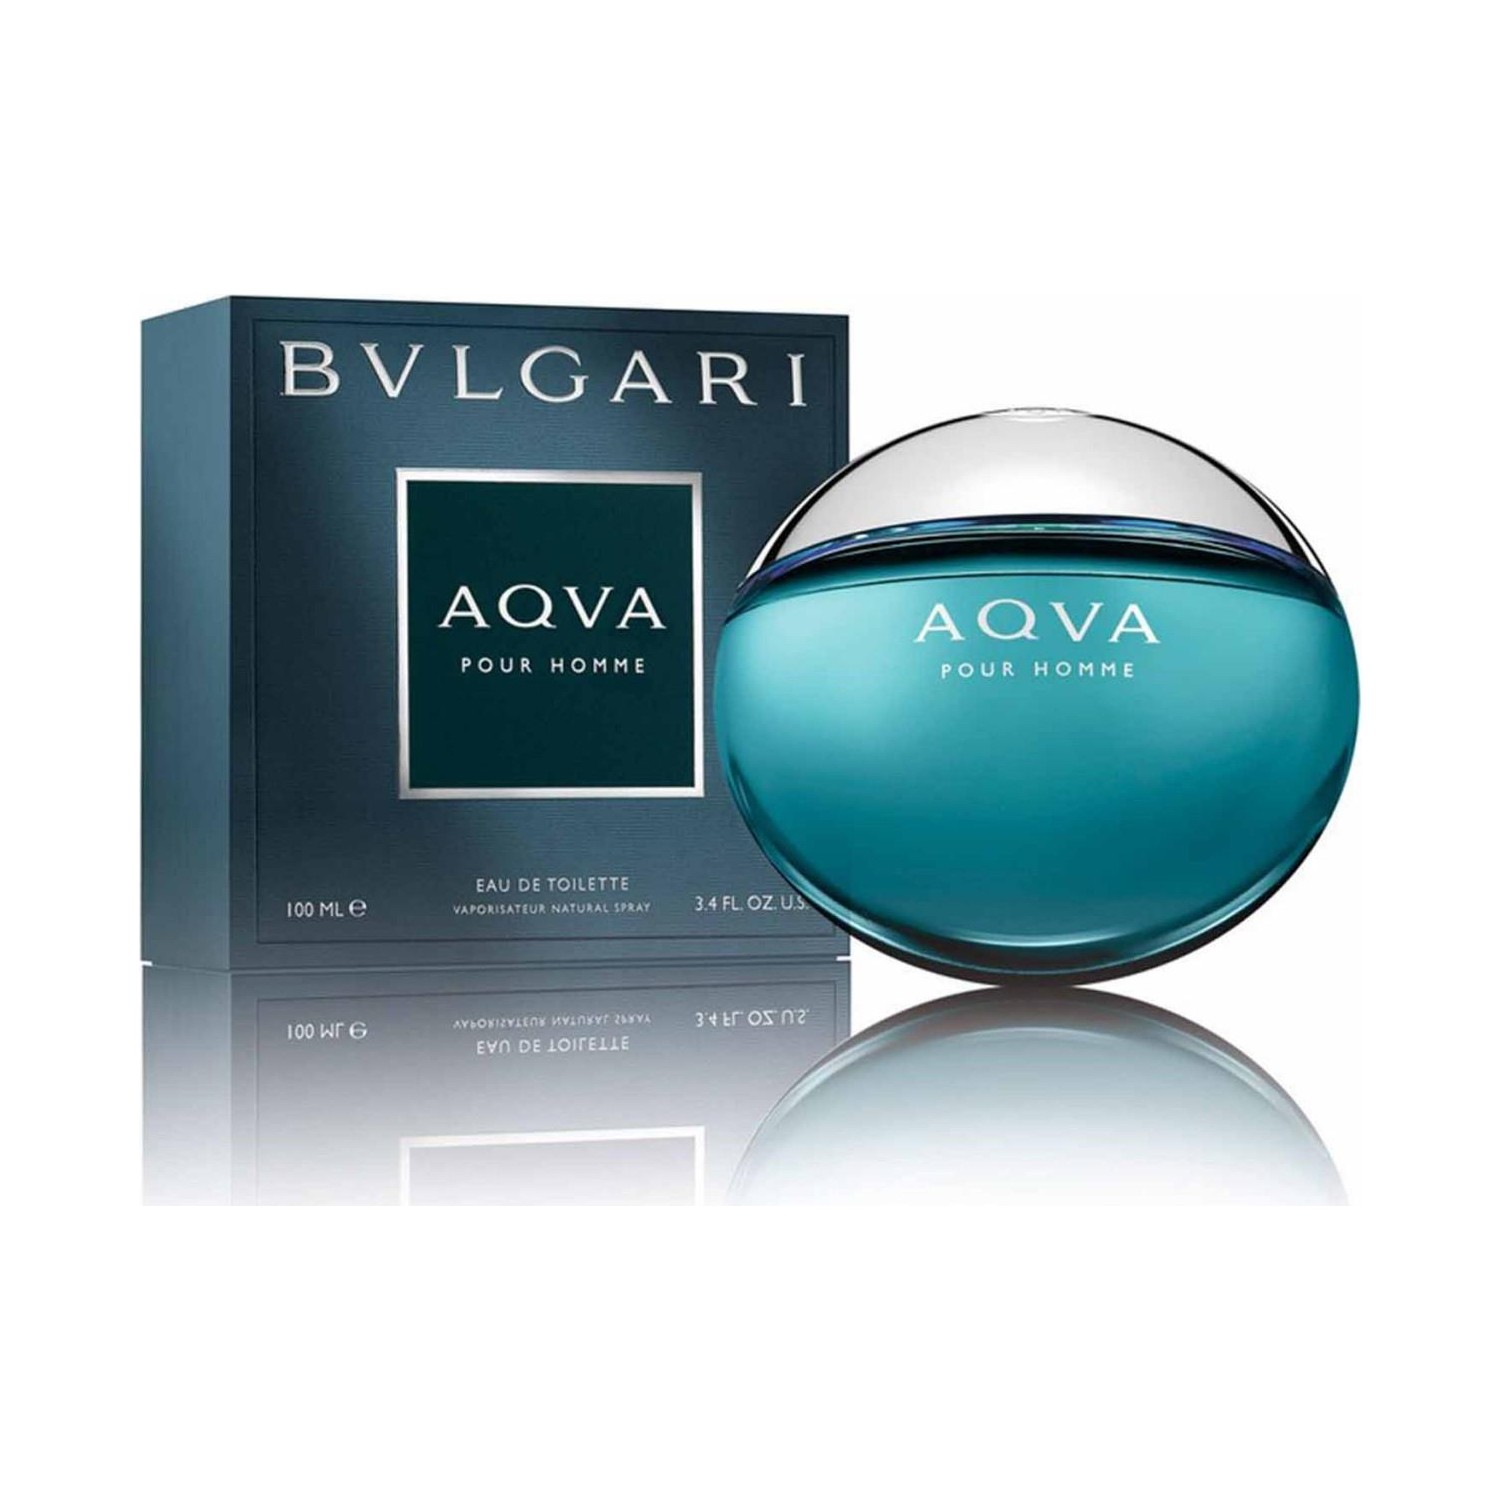 bvlgari parfum aqua